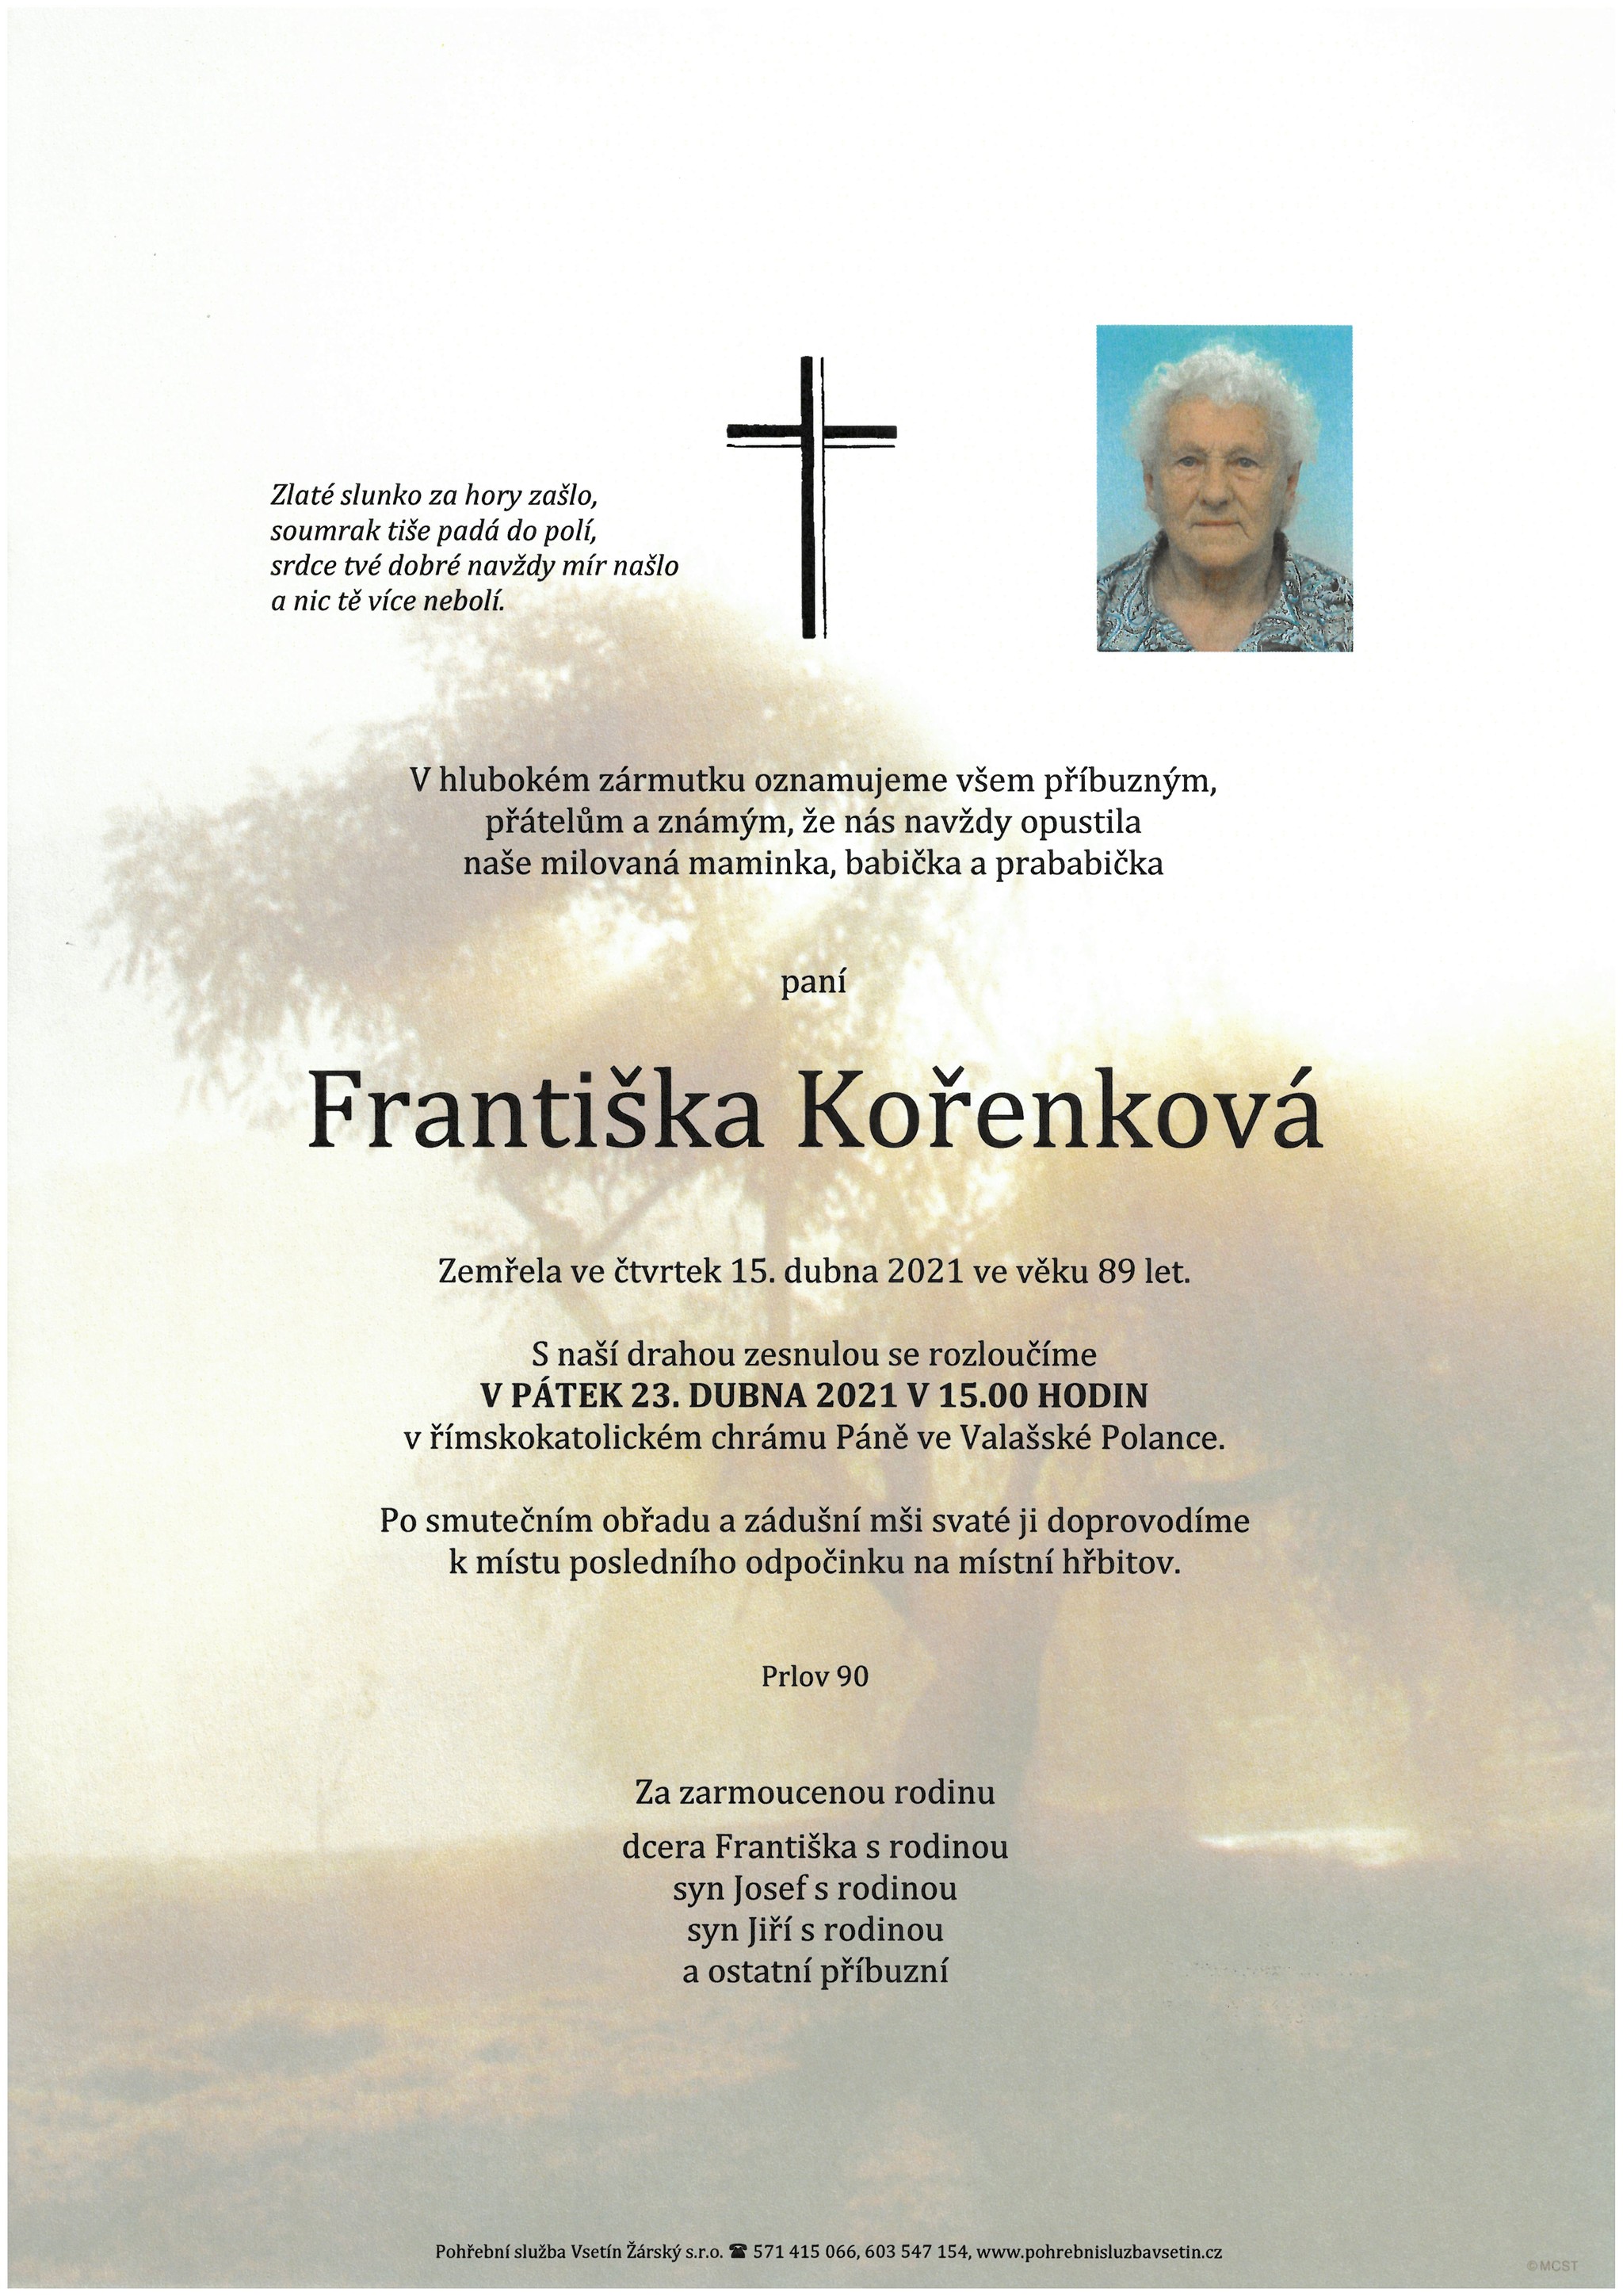 Františka Kořenková